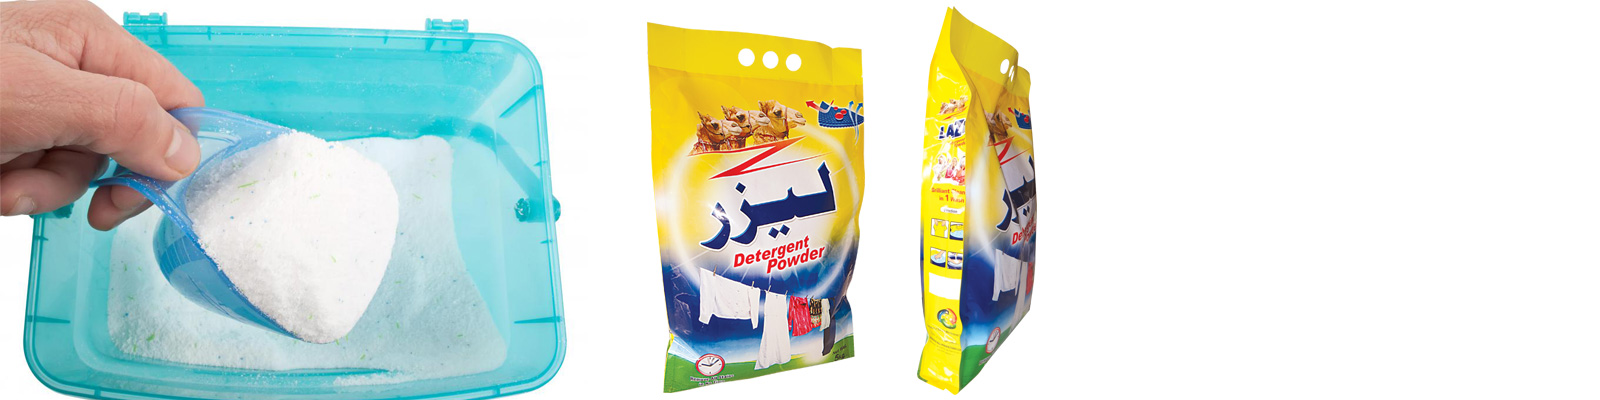 Detergent Powder Packaging